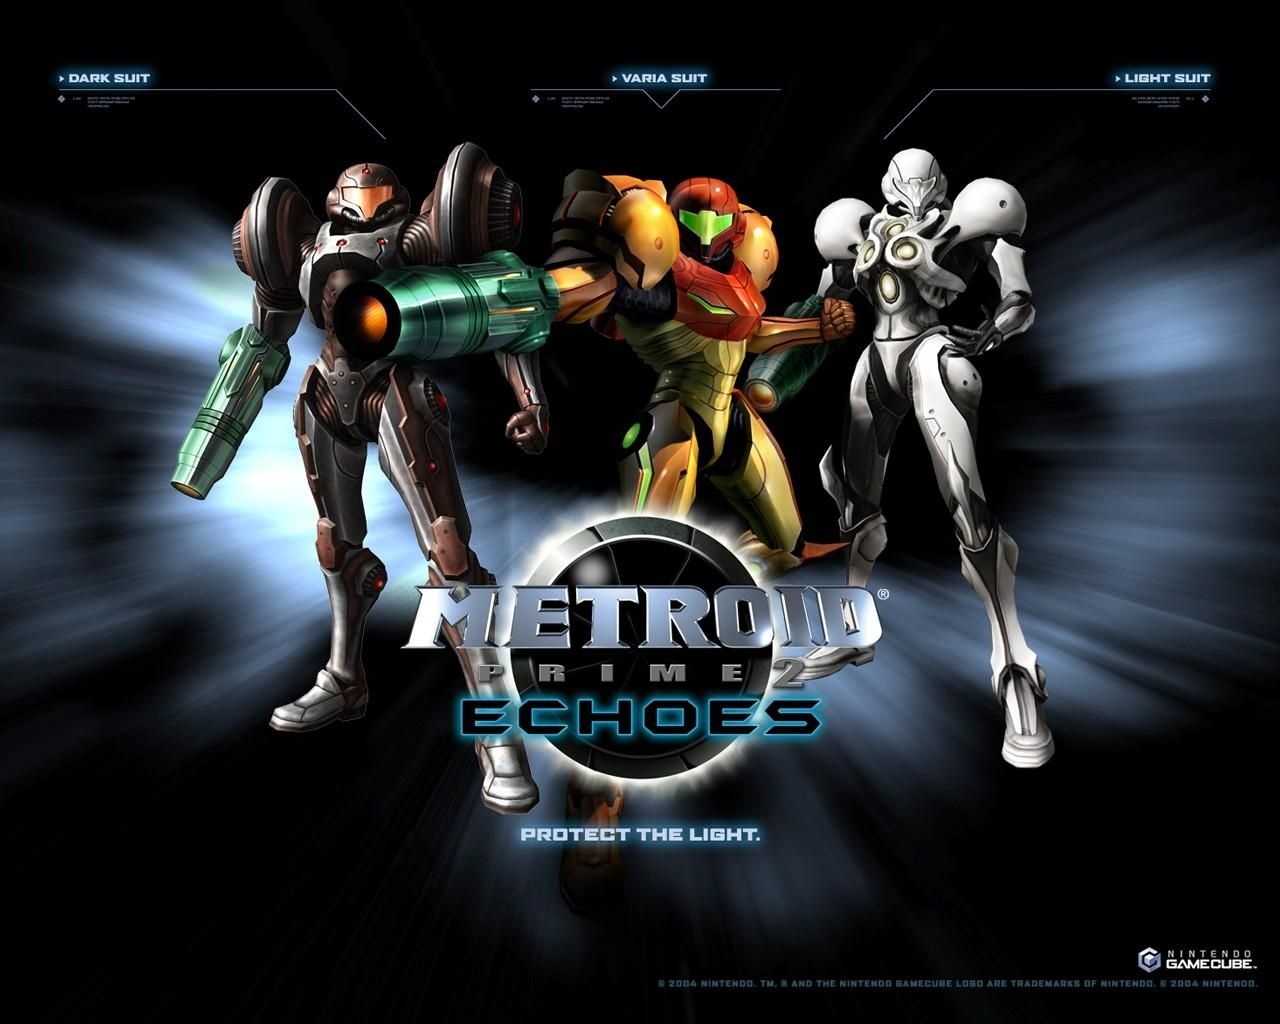 Fond d'écran gratuit de Metroid Prime 2 Echoes numéro 48275